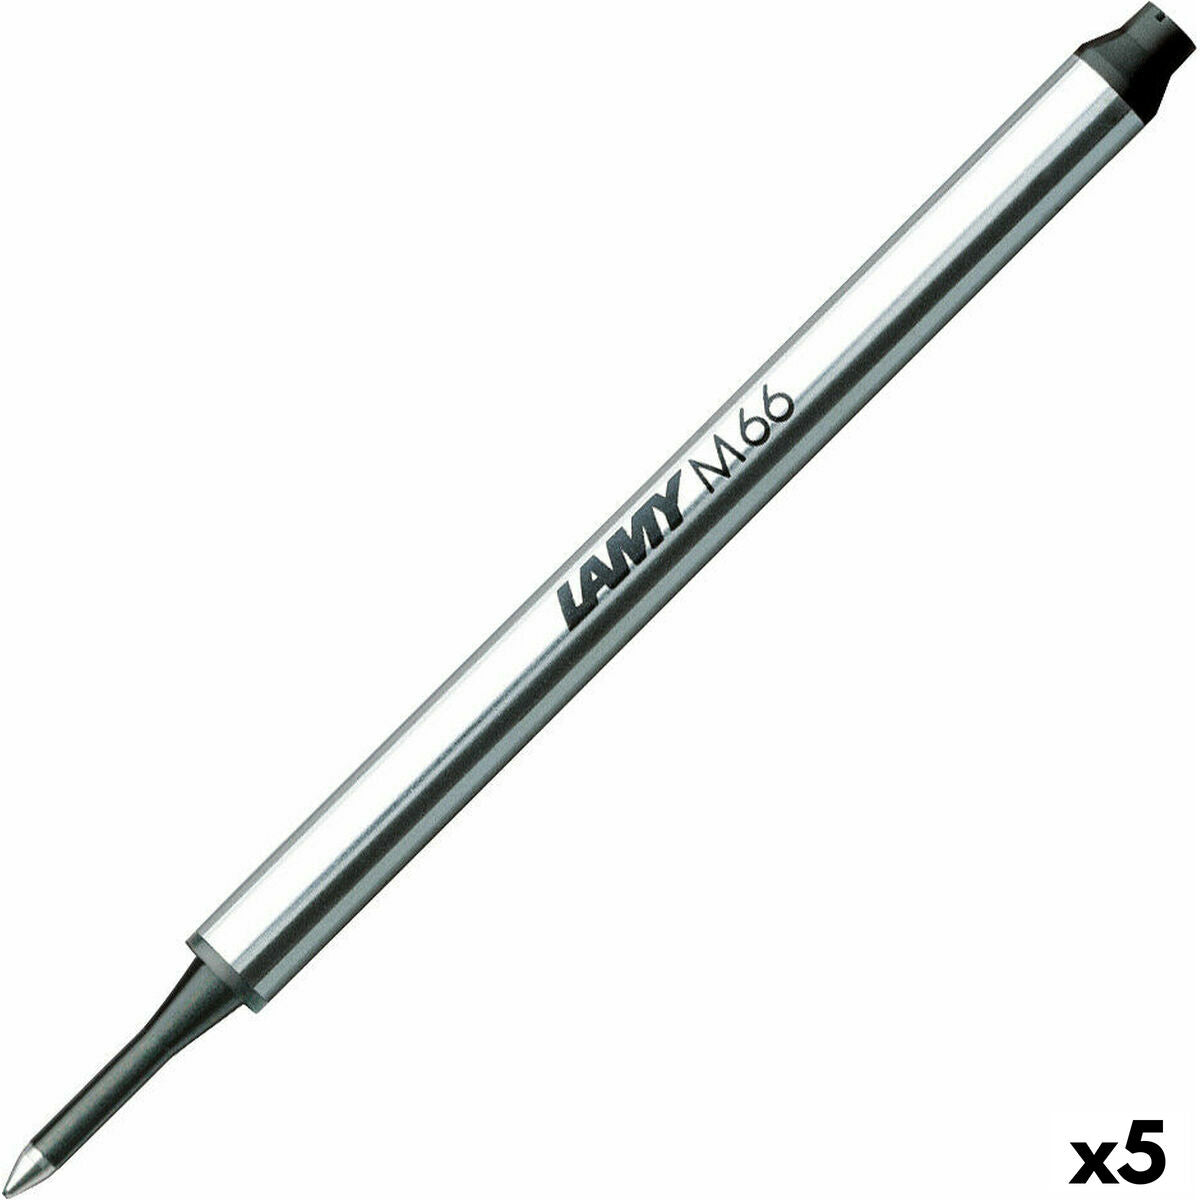 Nachfüllung für Kugelschreiber Lamy M66 1 mm Schwarz (5 Stück)